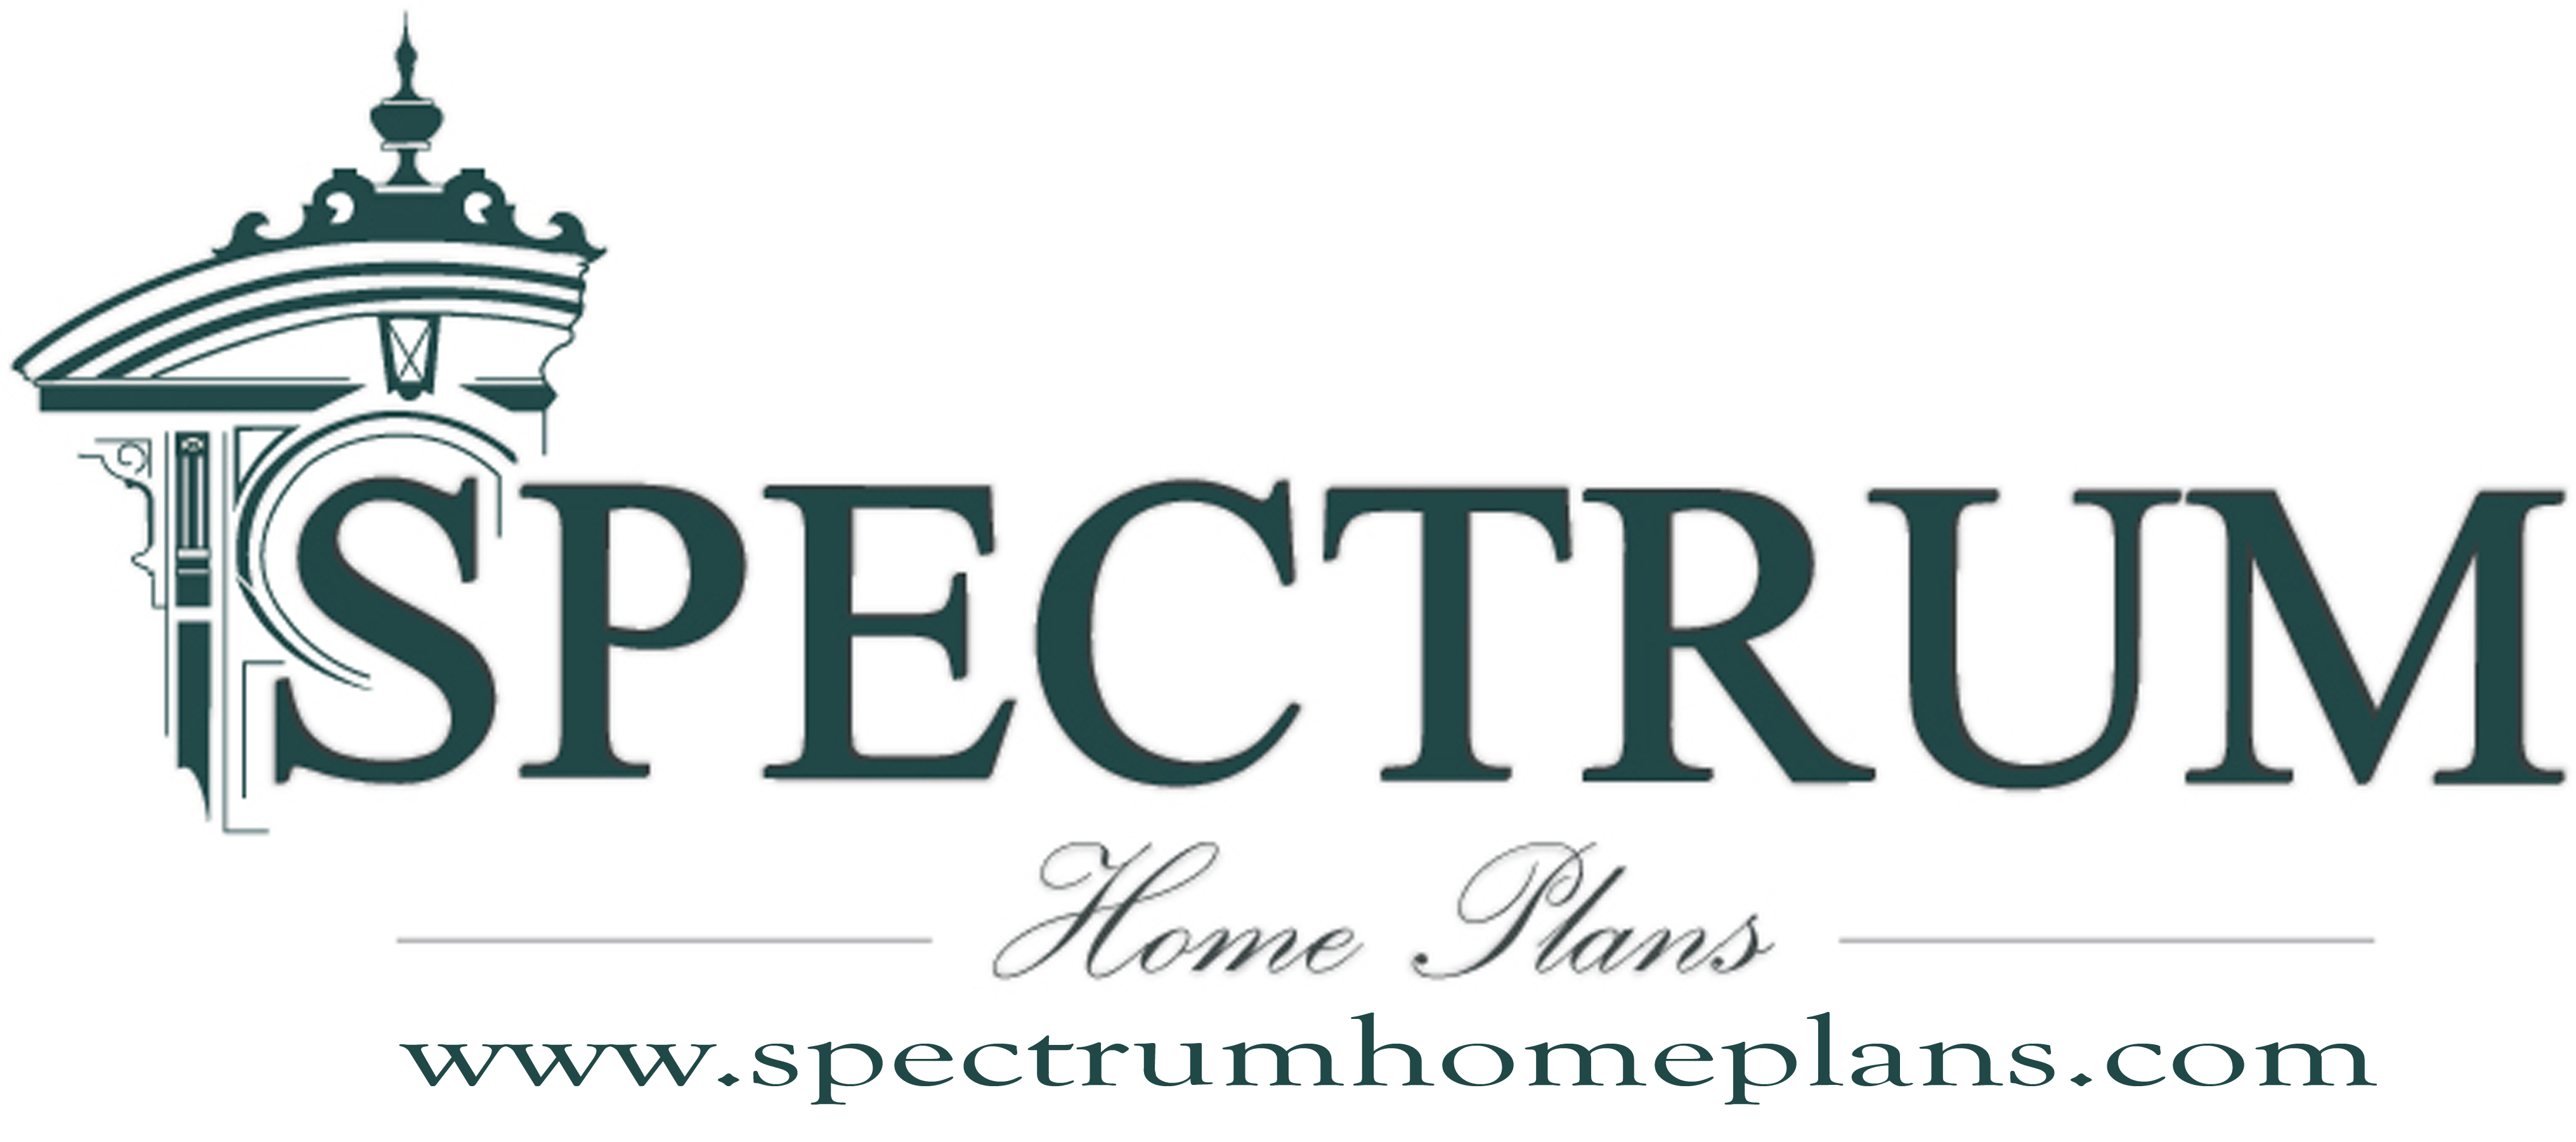 Spectrum Home Plans .com